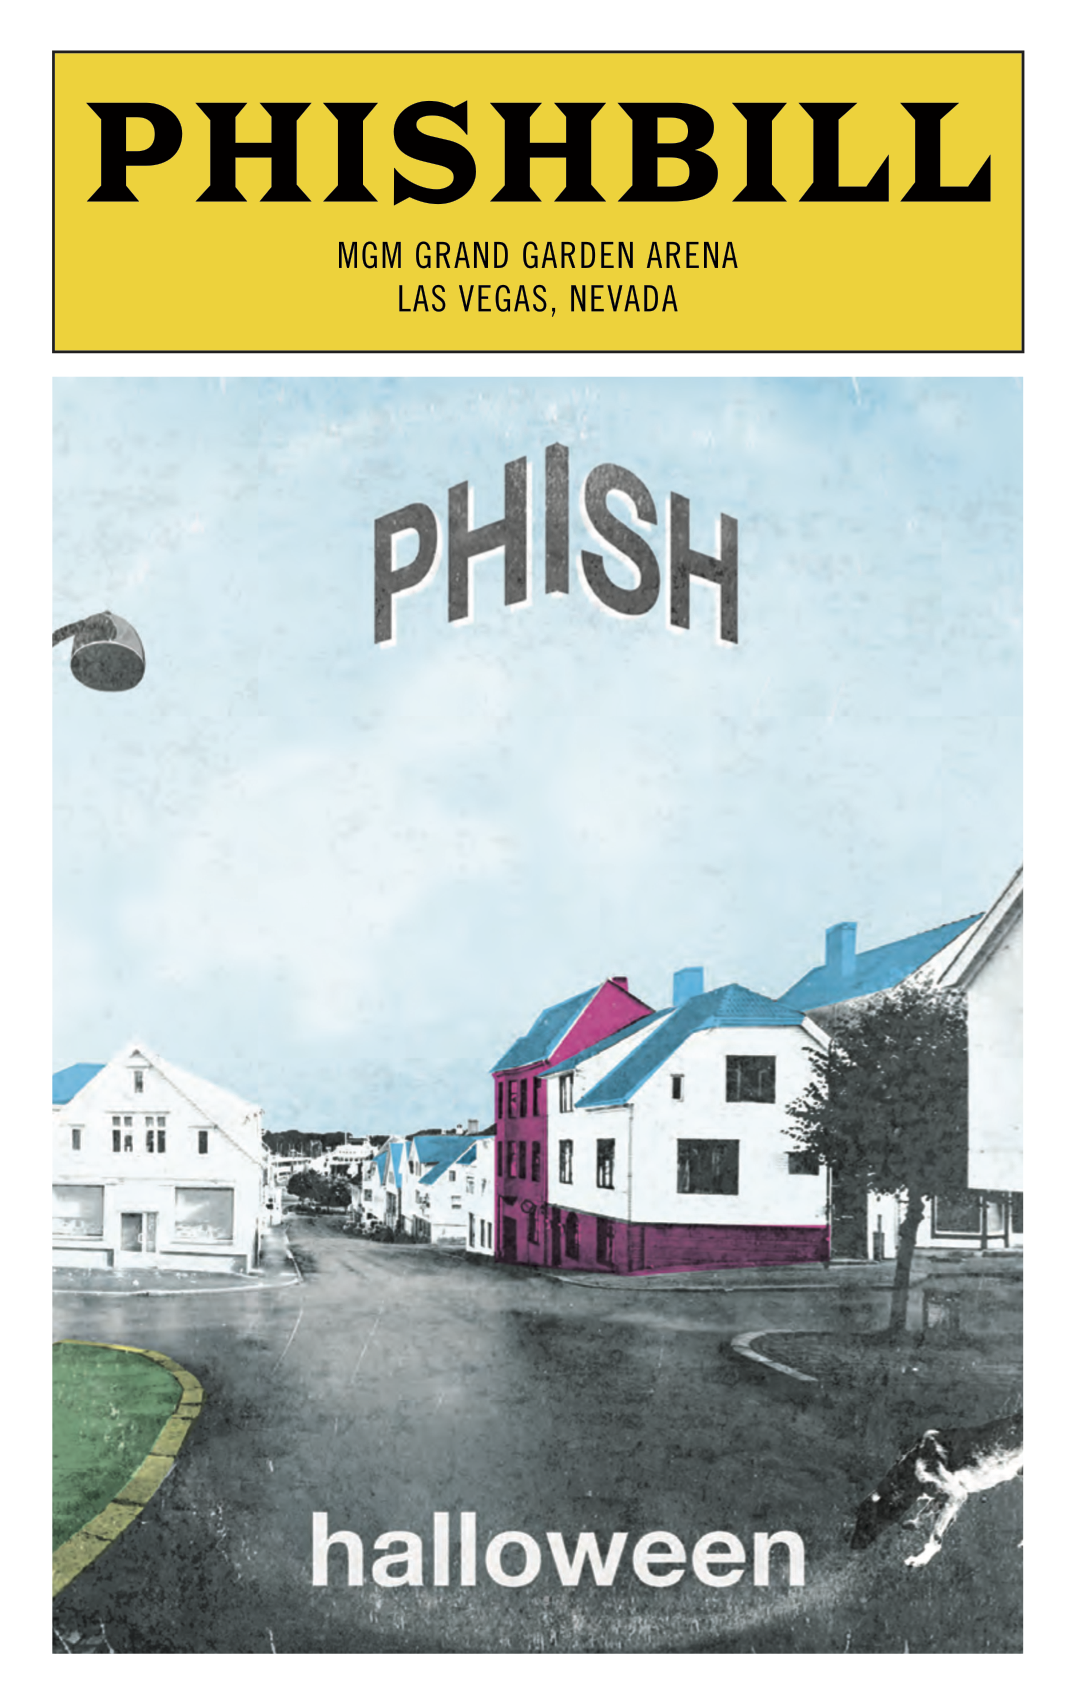 See the Full Phishbill Issued for Phish’s 2018 Halloween “Album Choice,” Kasvot Växt’s ‘í rokk’